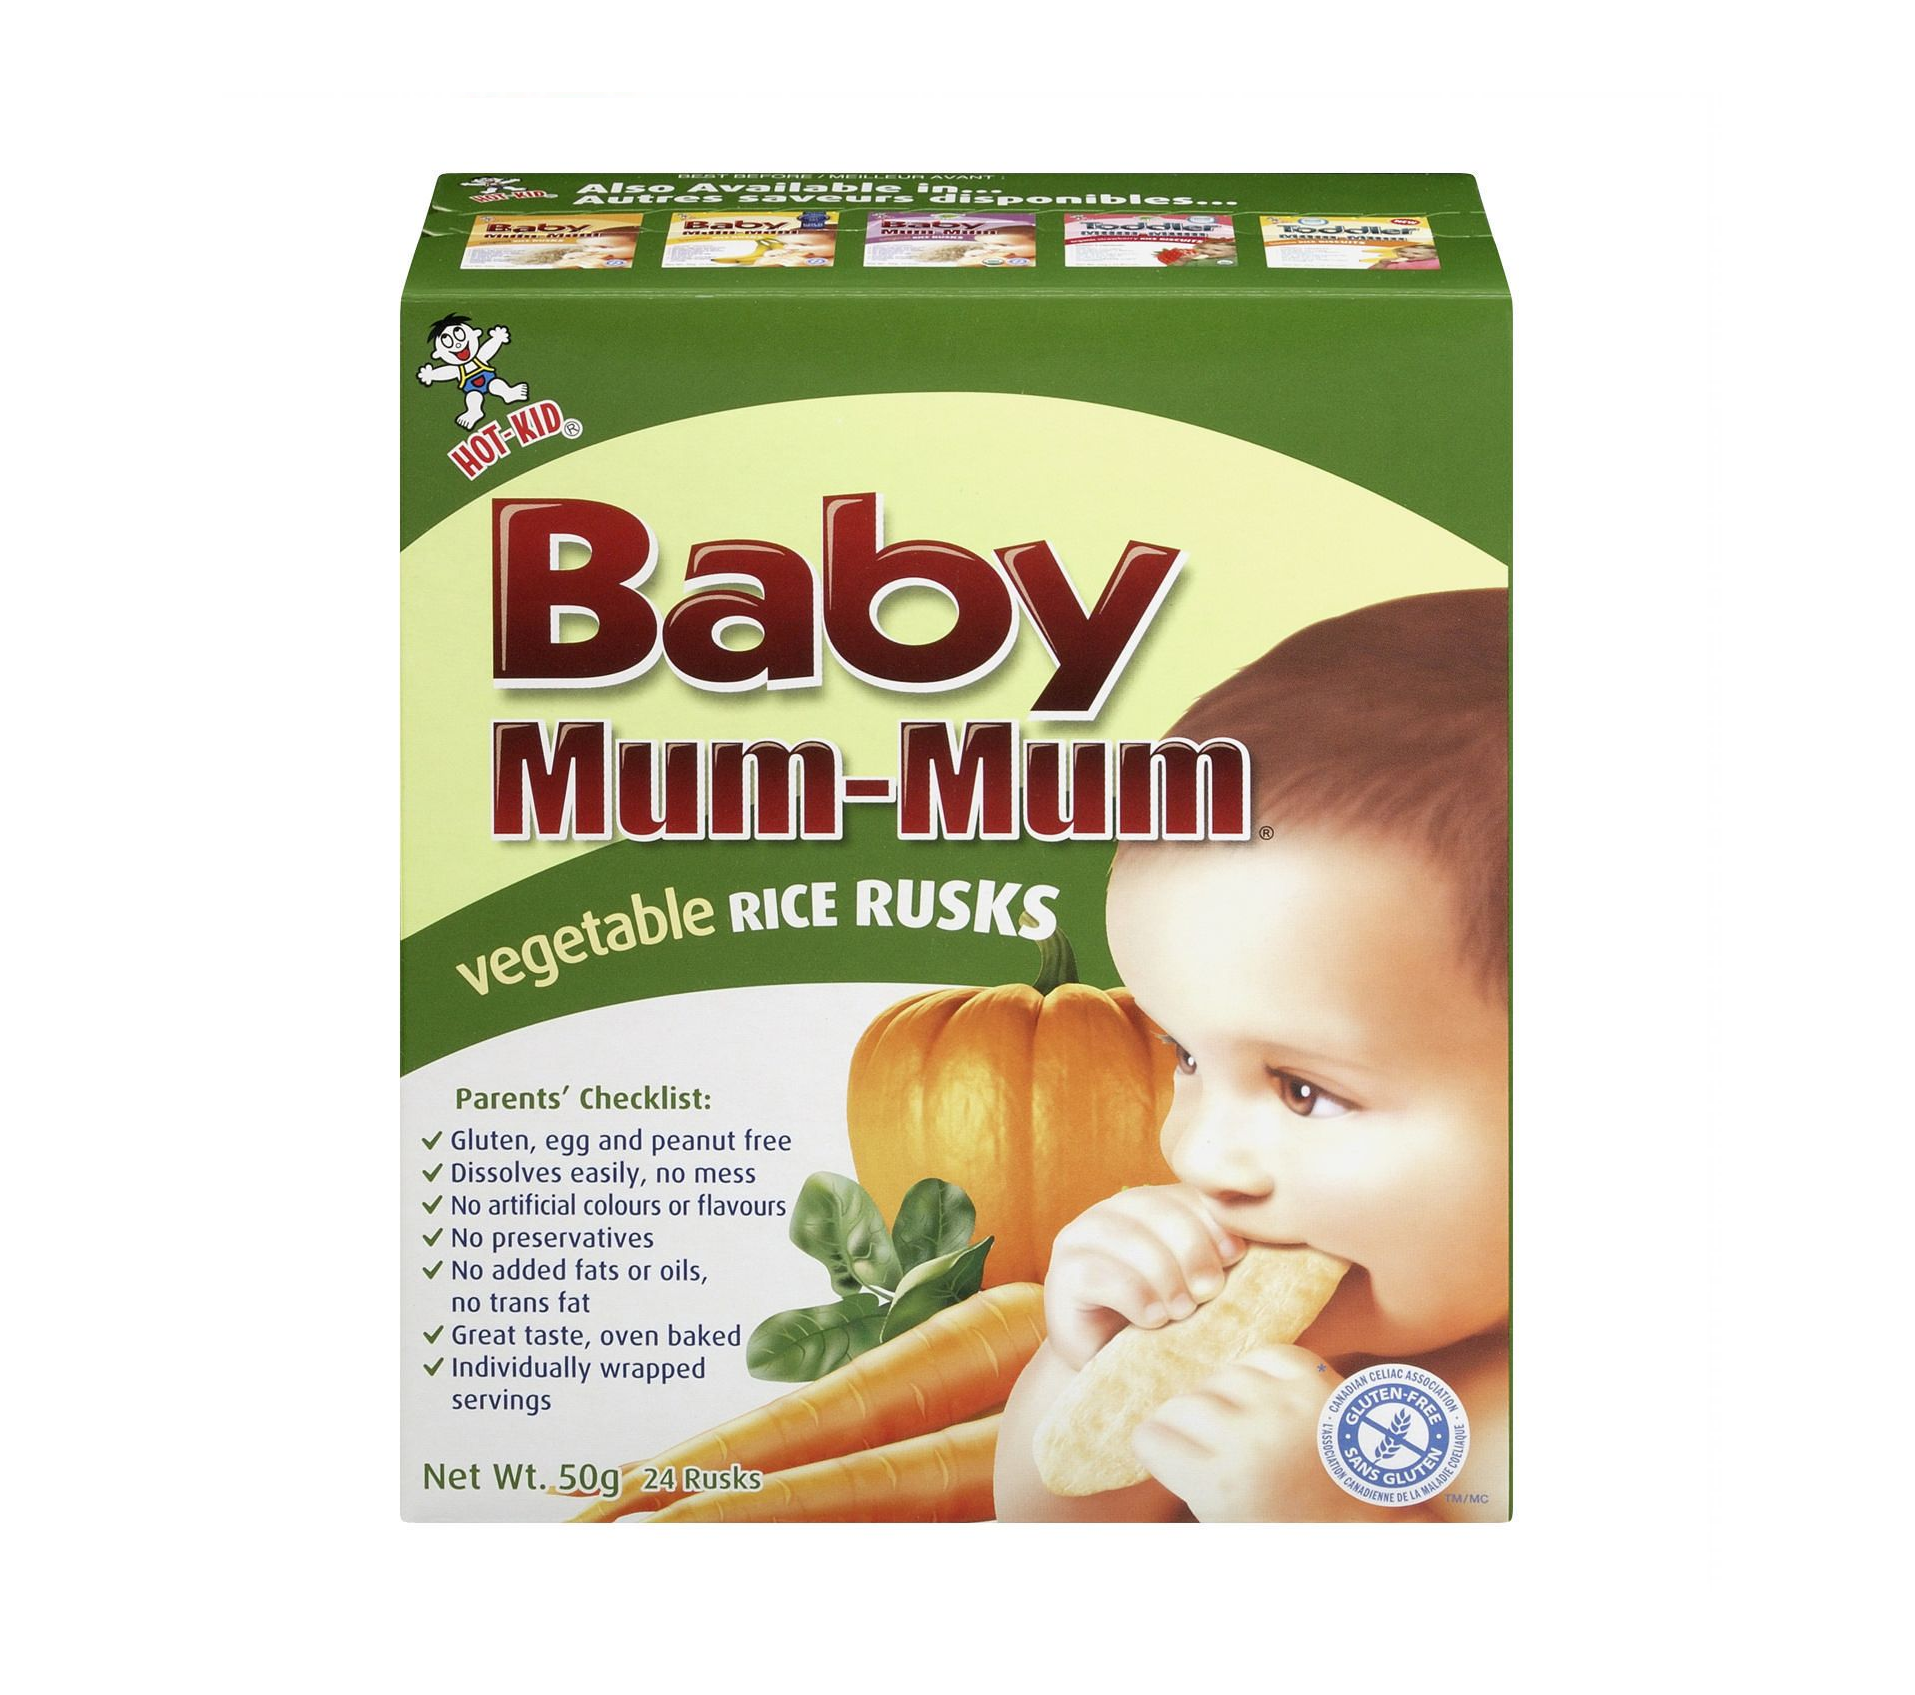 Baby Mum-Mum Vegetable Rice Rusks